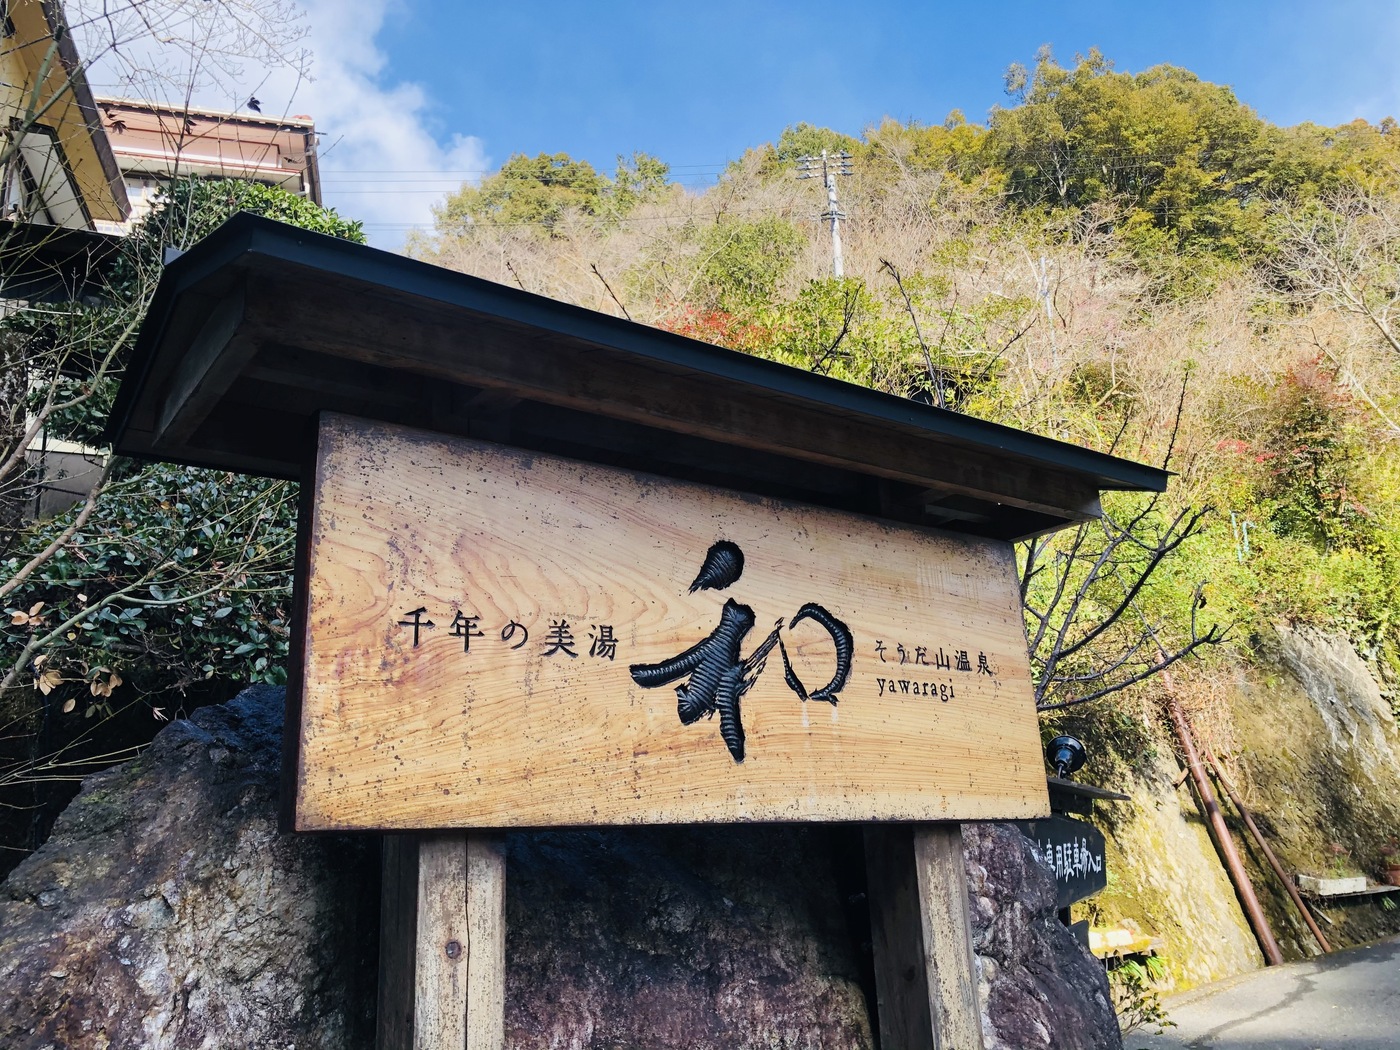 千年の美湯そうだ山温泉 和 観光スポット検索 高知県観光情報Webサイトこうち旅ネット